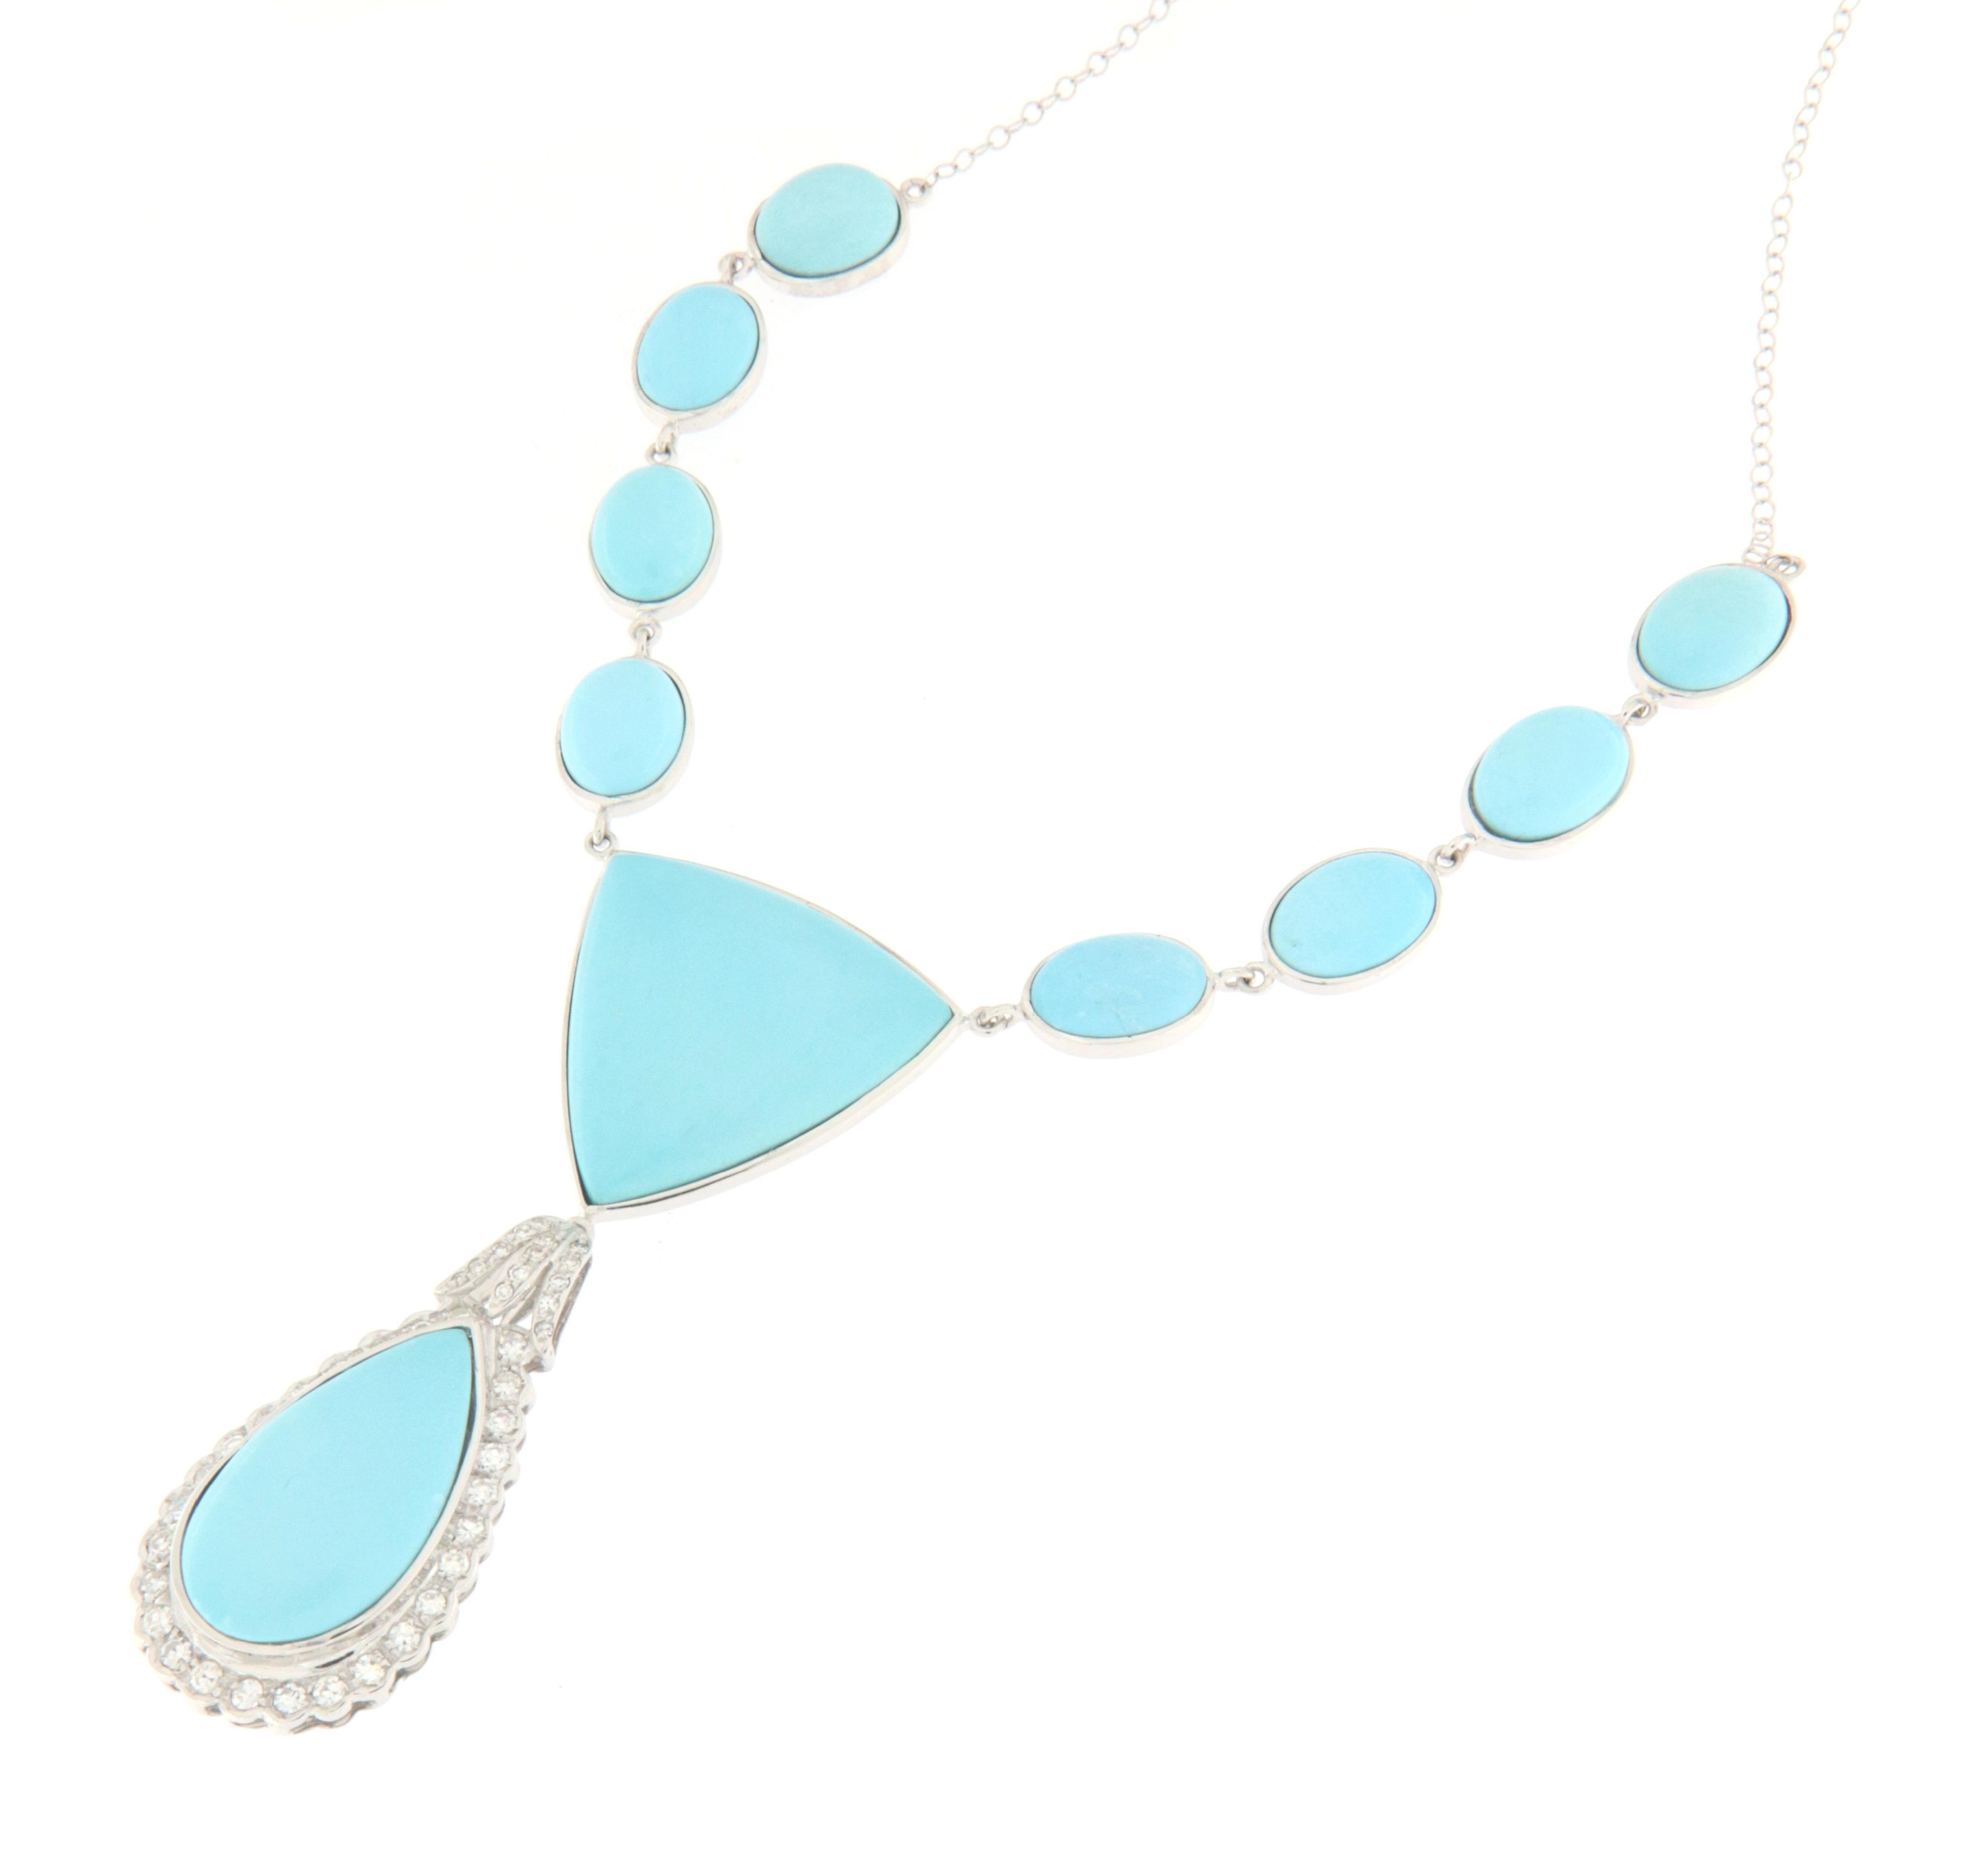 Brilliant Cut Turquoise Diamonds 18 Karat White Gold Pendant Necklace For Sale